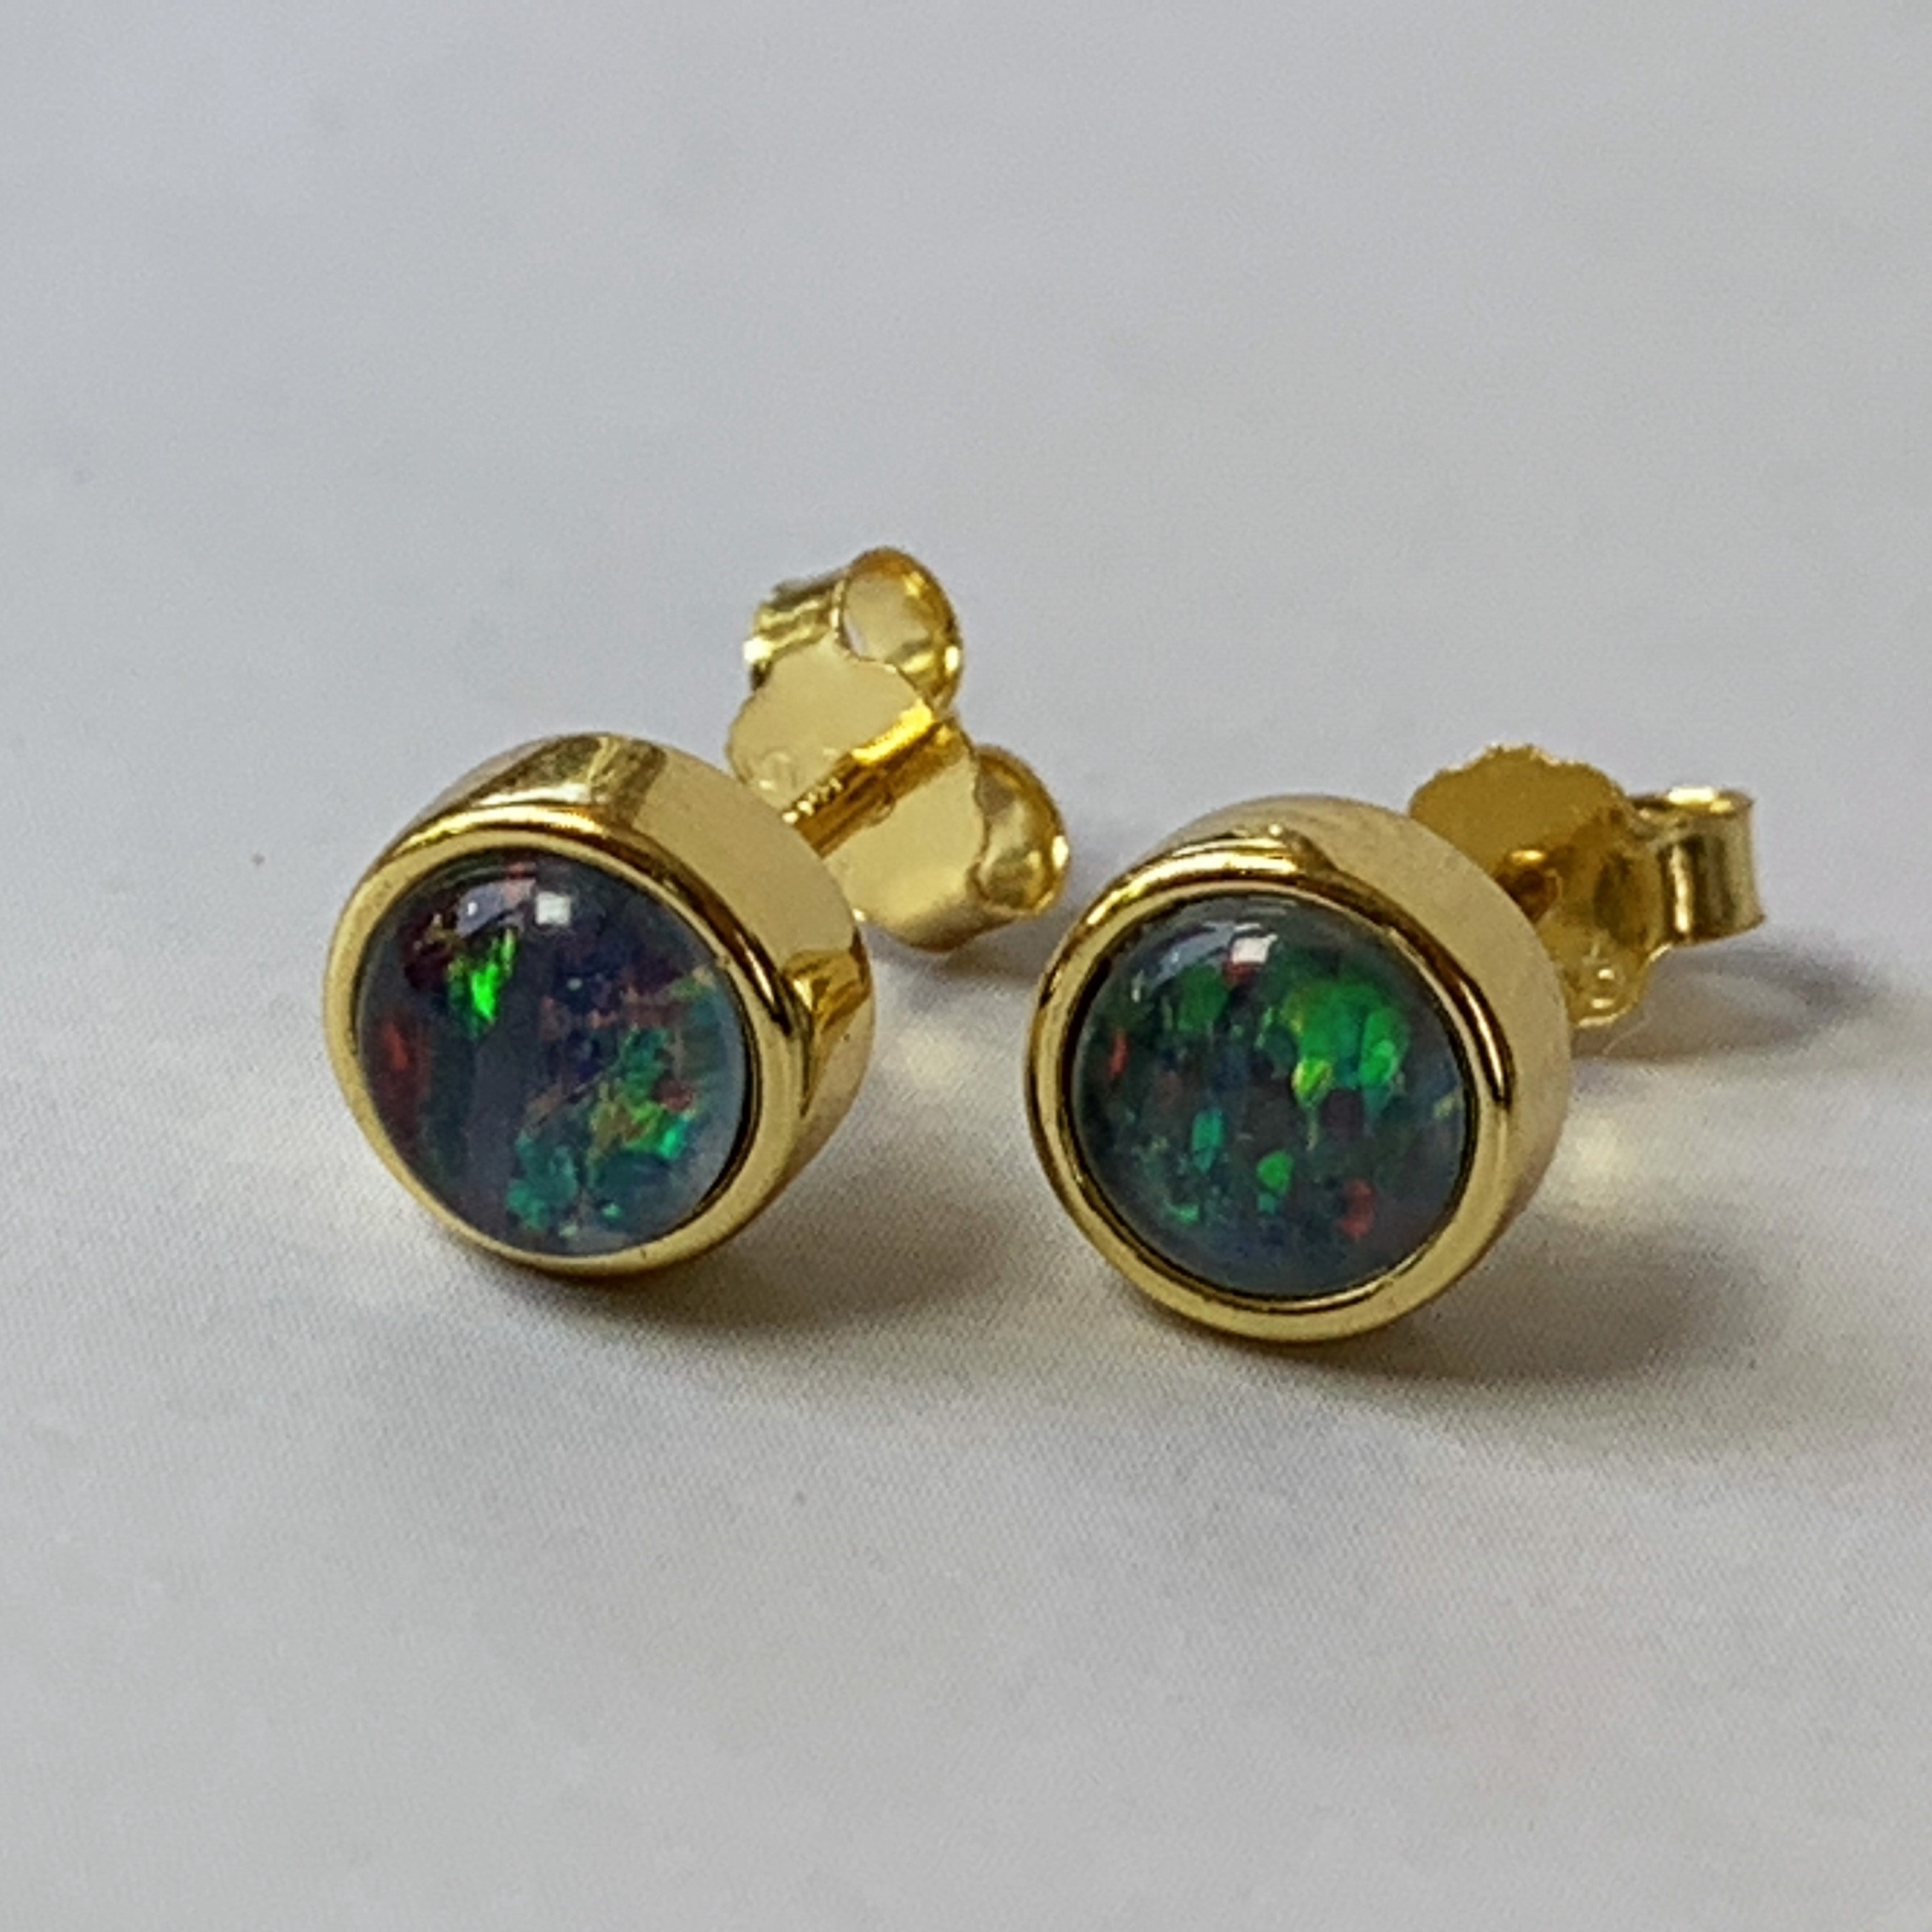 Gold plated silver 5mm Opal triplet bezel set studs - Masterpiece Jewellery Opal & Gems Sydney Australia | Online Shop